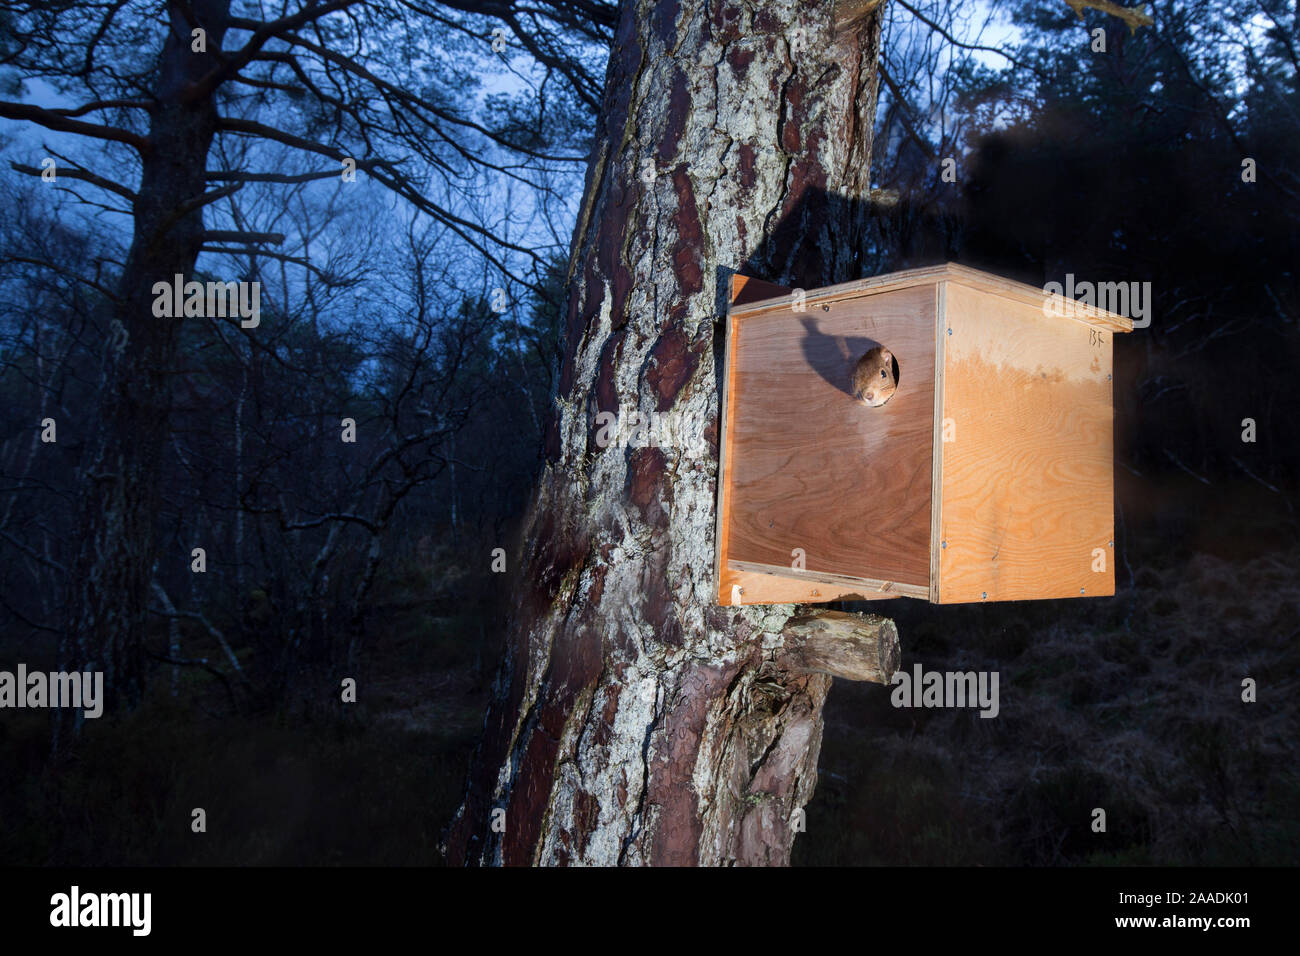 Cámara disparo remoto de la ardilla roja (Sciurus vulgaris) que emergen de caja de tránsito tras su traslocación de Moray a Plockton, Escocia, Reino Unido. Serie documental ganador de la categoría de los British Wildlife Photography Awards (BWPA) 2017. Foto de stock